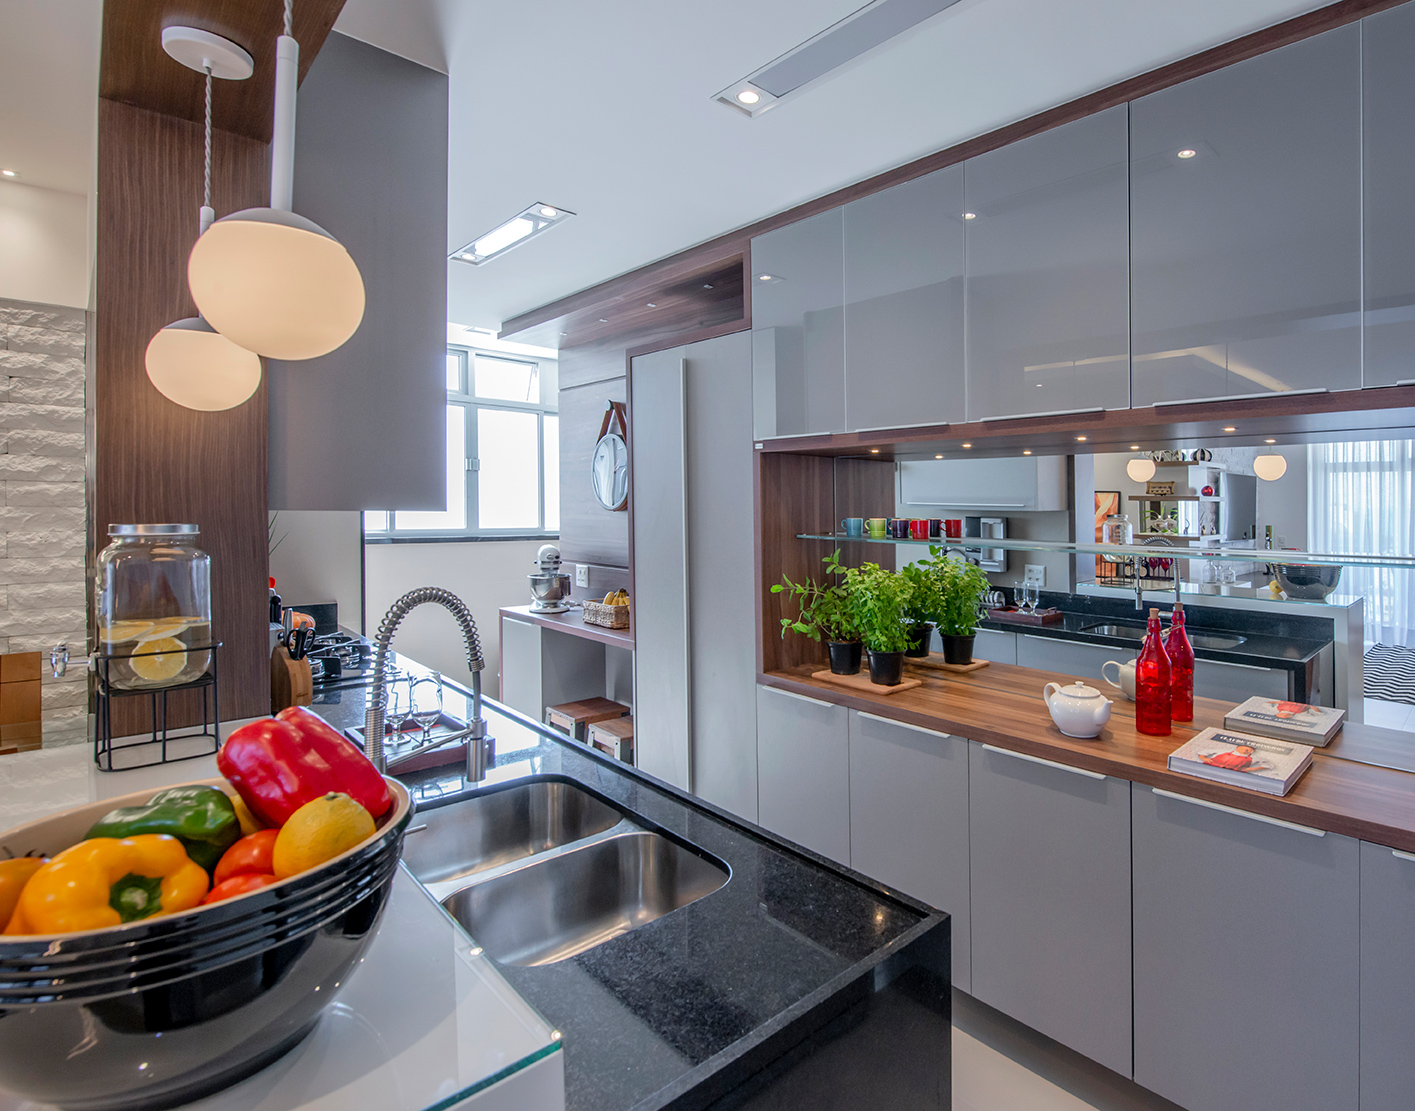 Apê de 90 m² ganha layout funcional após troca de paredes de lugar. Projeto de Campos & Olivetti Arquitetura. Na foto, cozinha corredor com parece de espelho e passa prato.